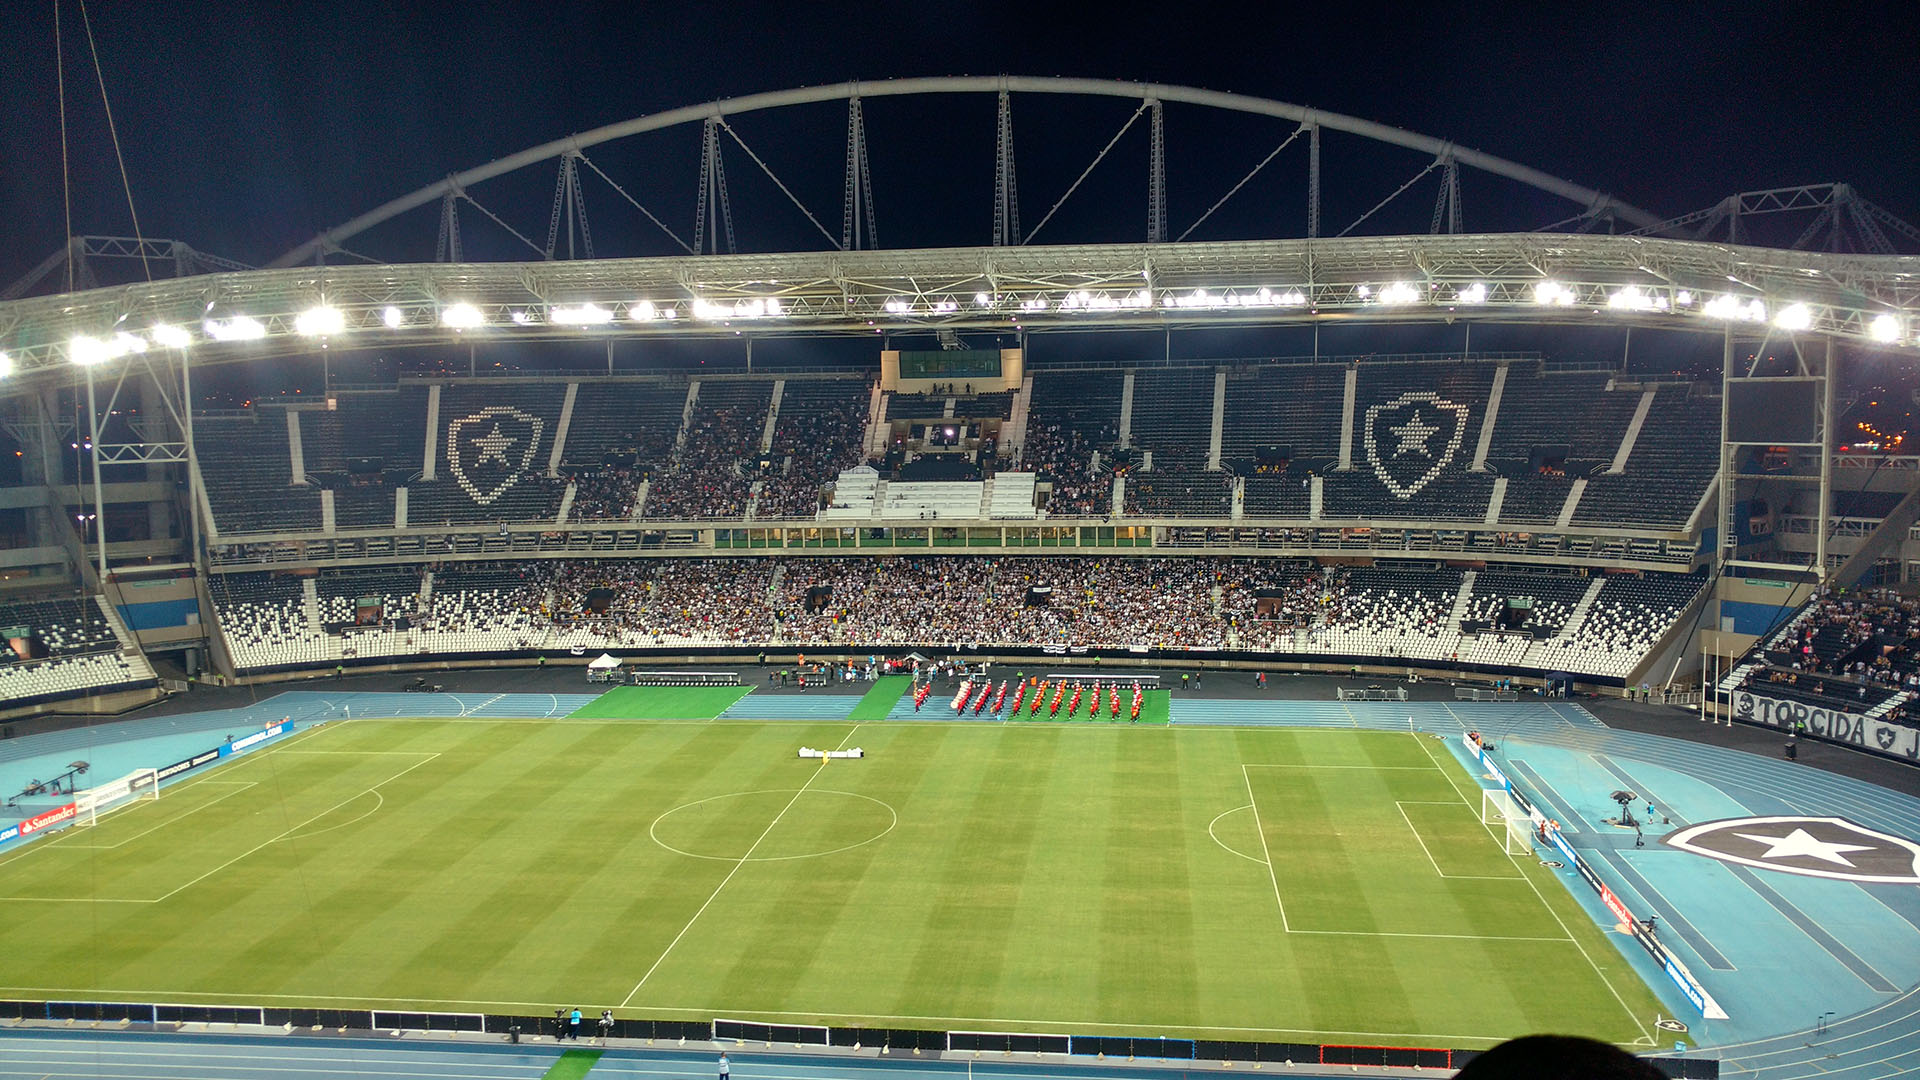 (Estádio Nilton Santos - Fonte: Wikimedia)